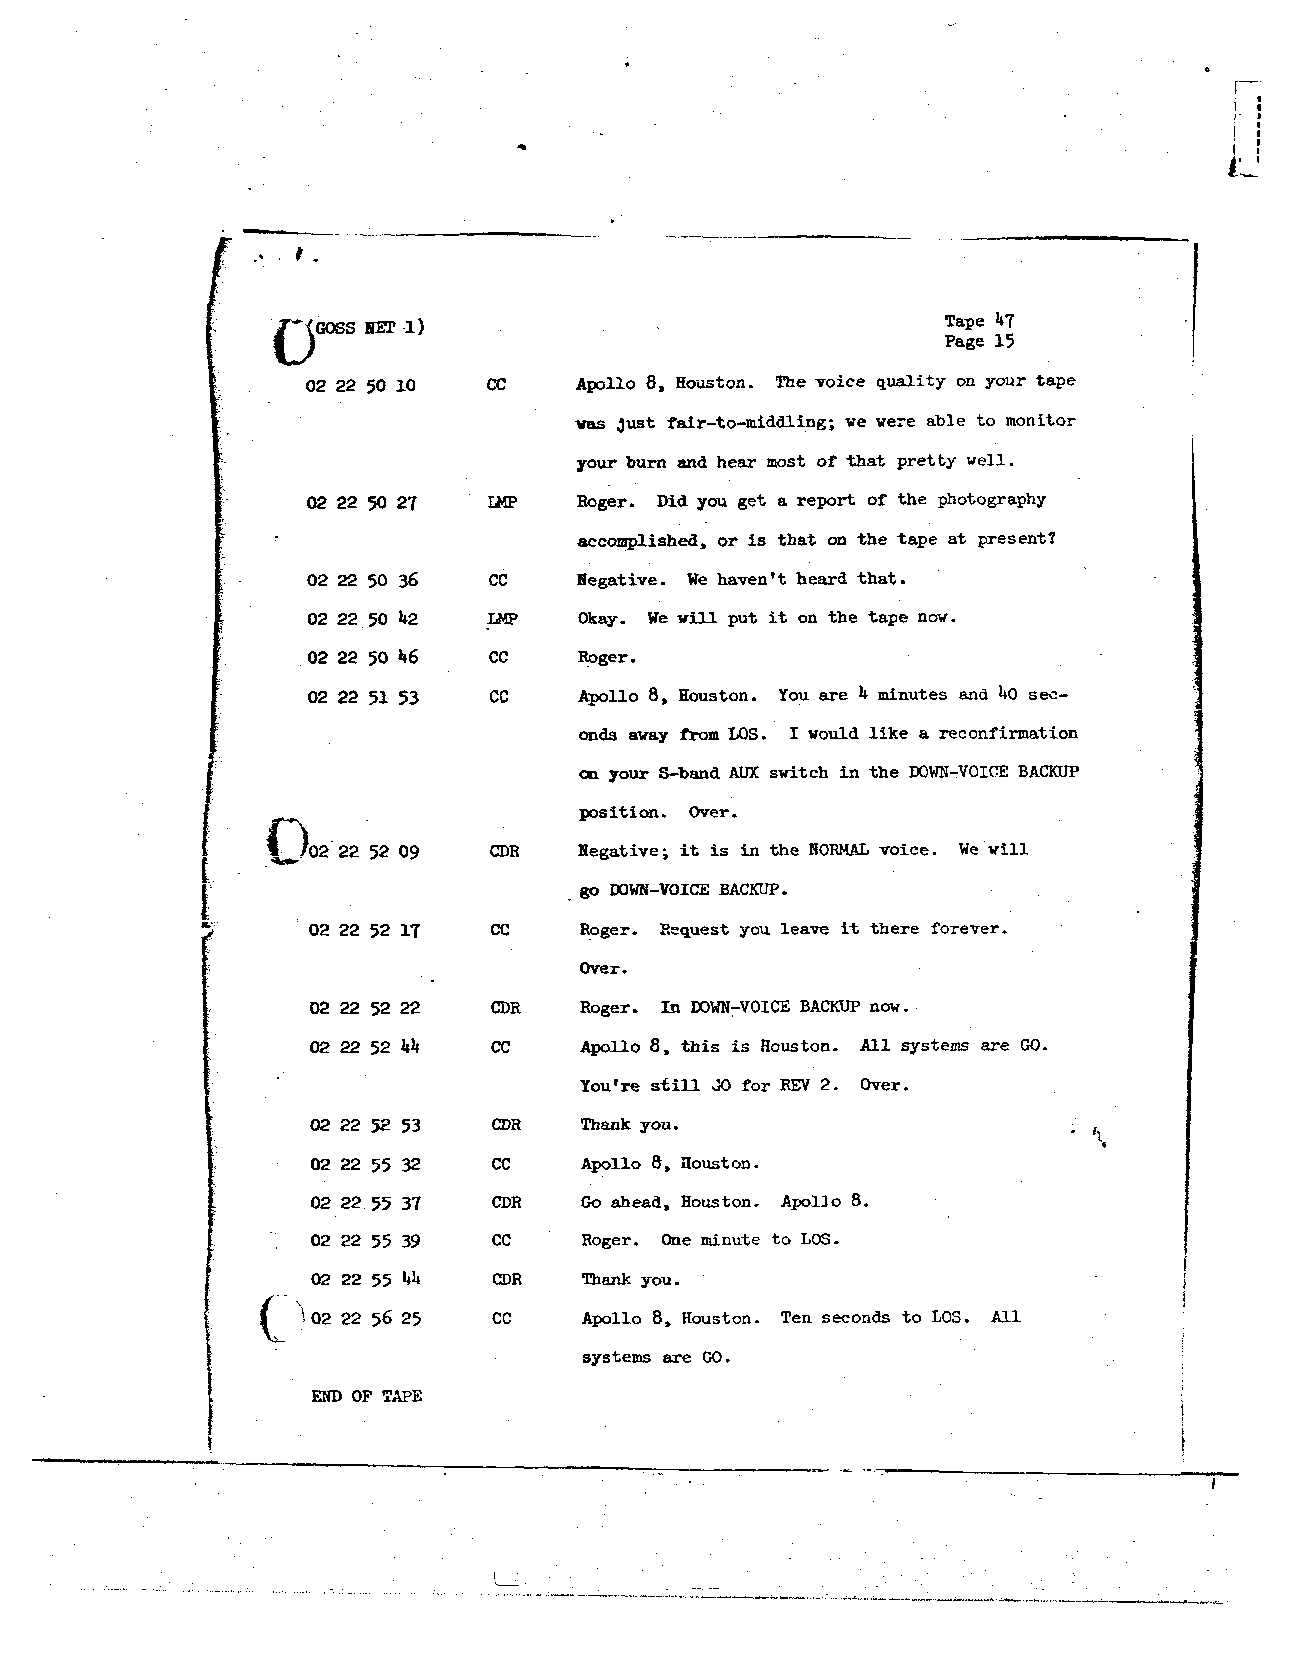 Page 372 of Apollo 8’s original transcript